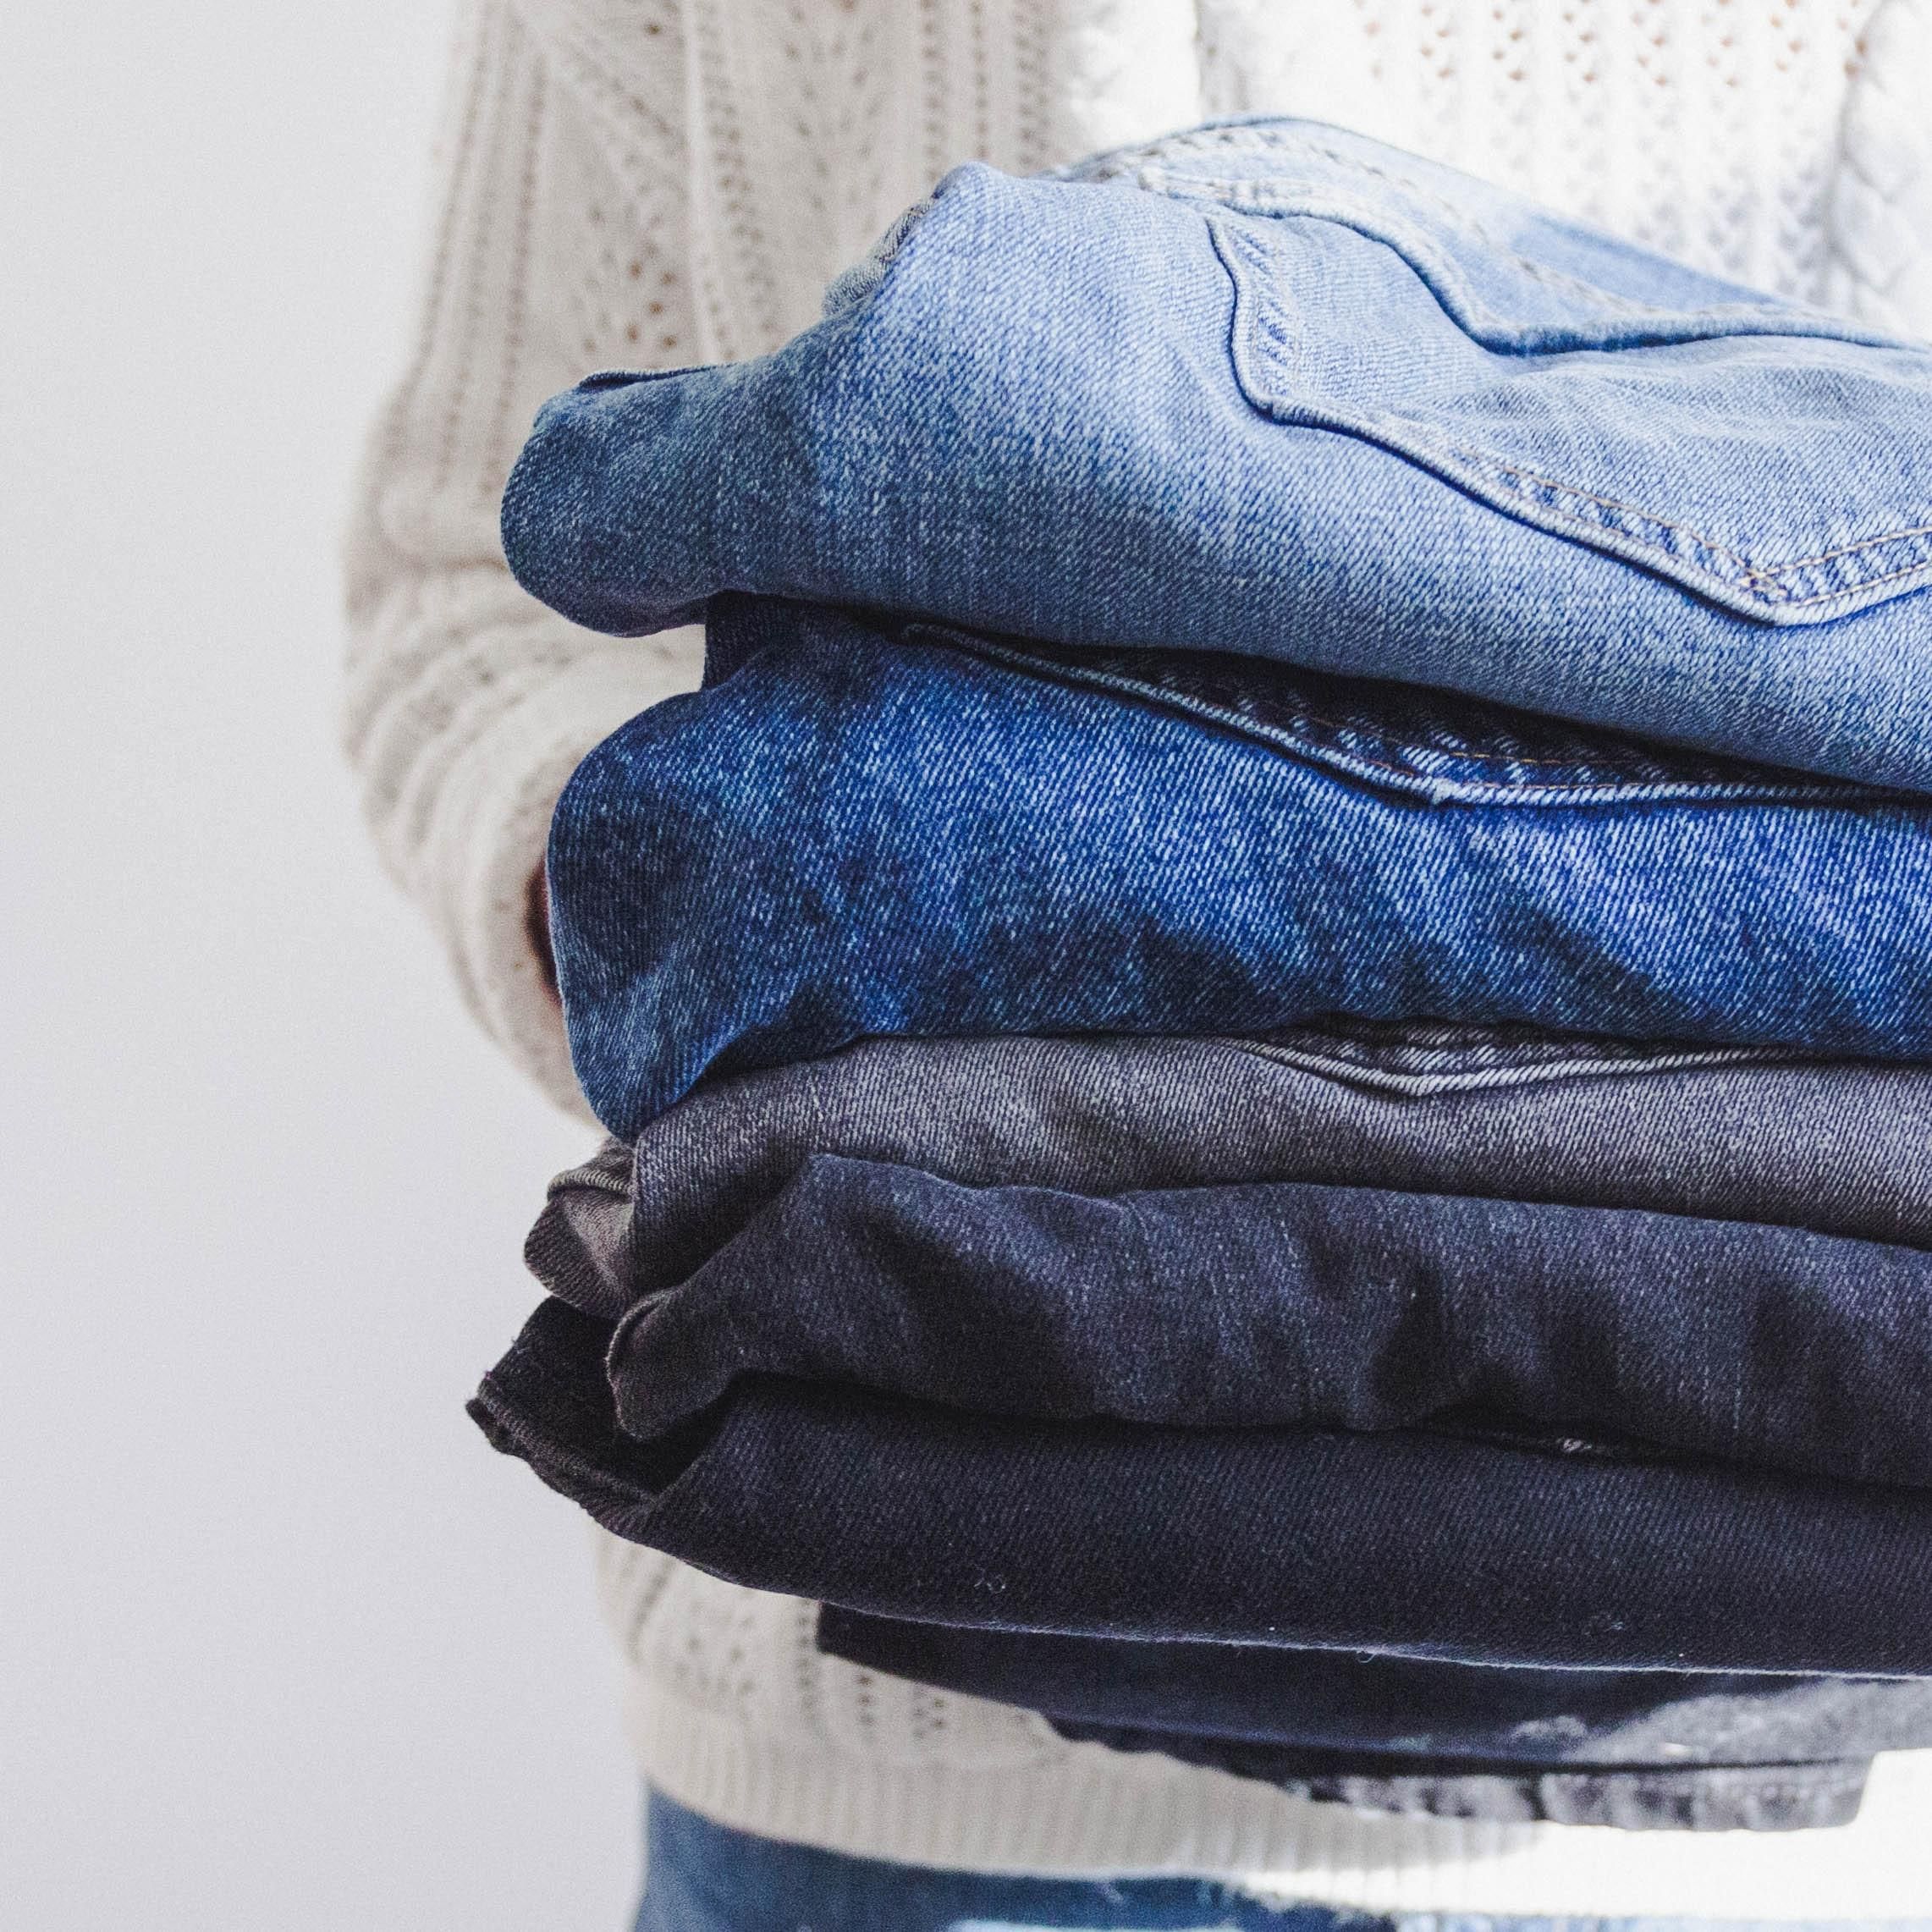 Как сложить одежду, чтобы сэкономить место в шкафу: метод экспертки - Идеи